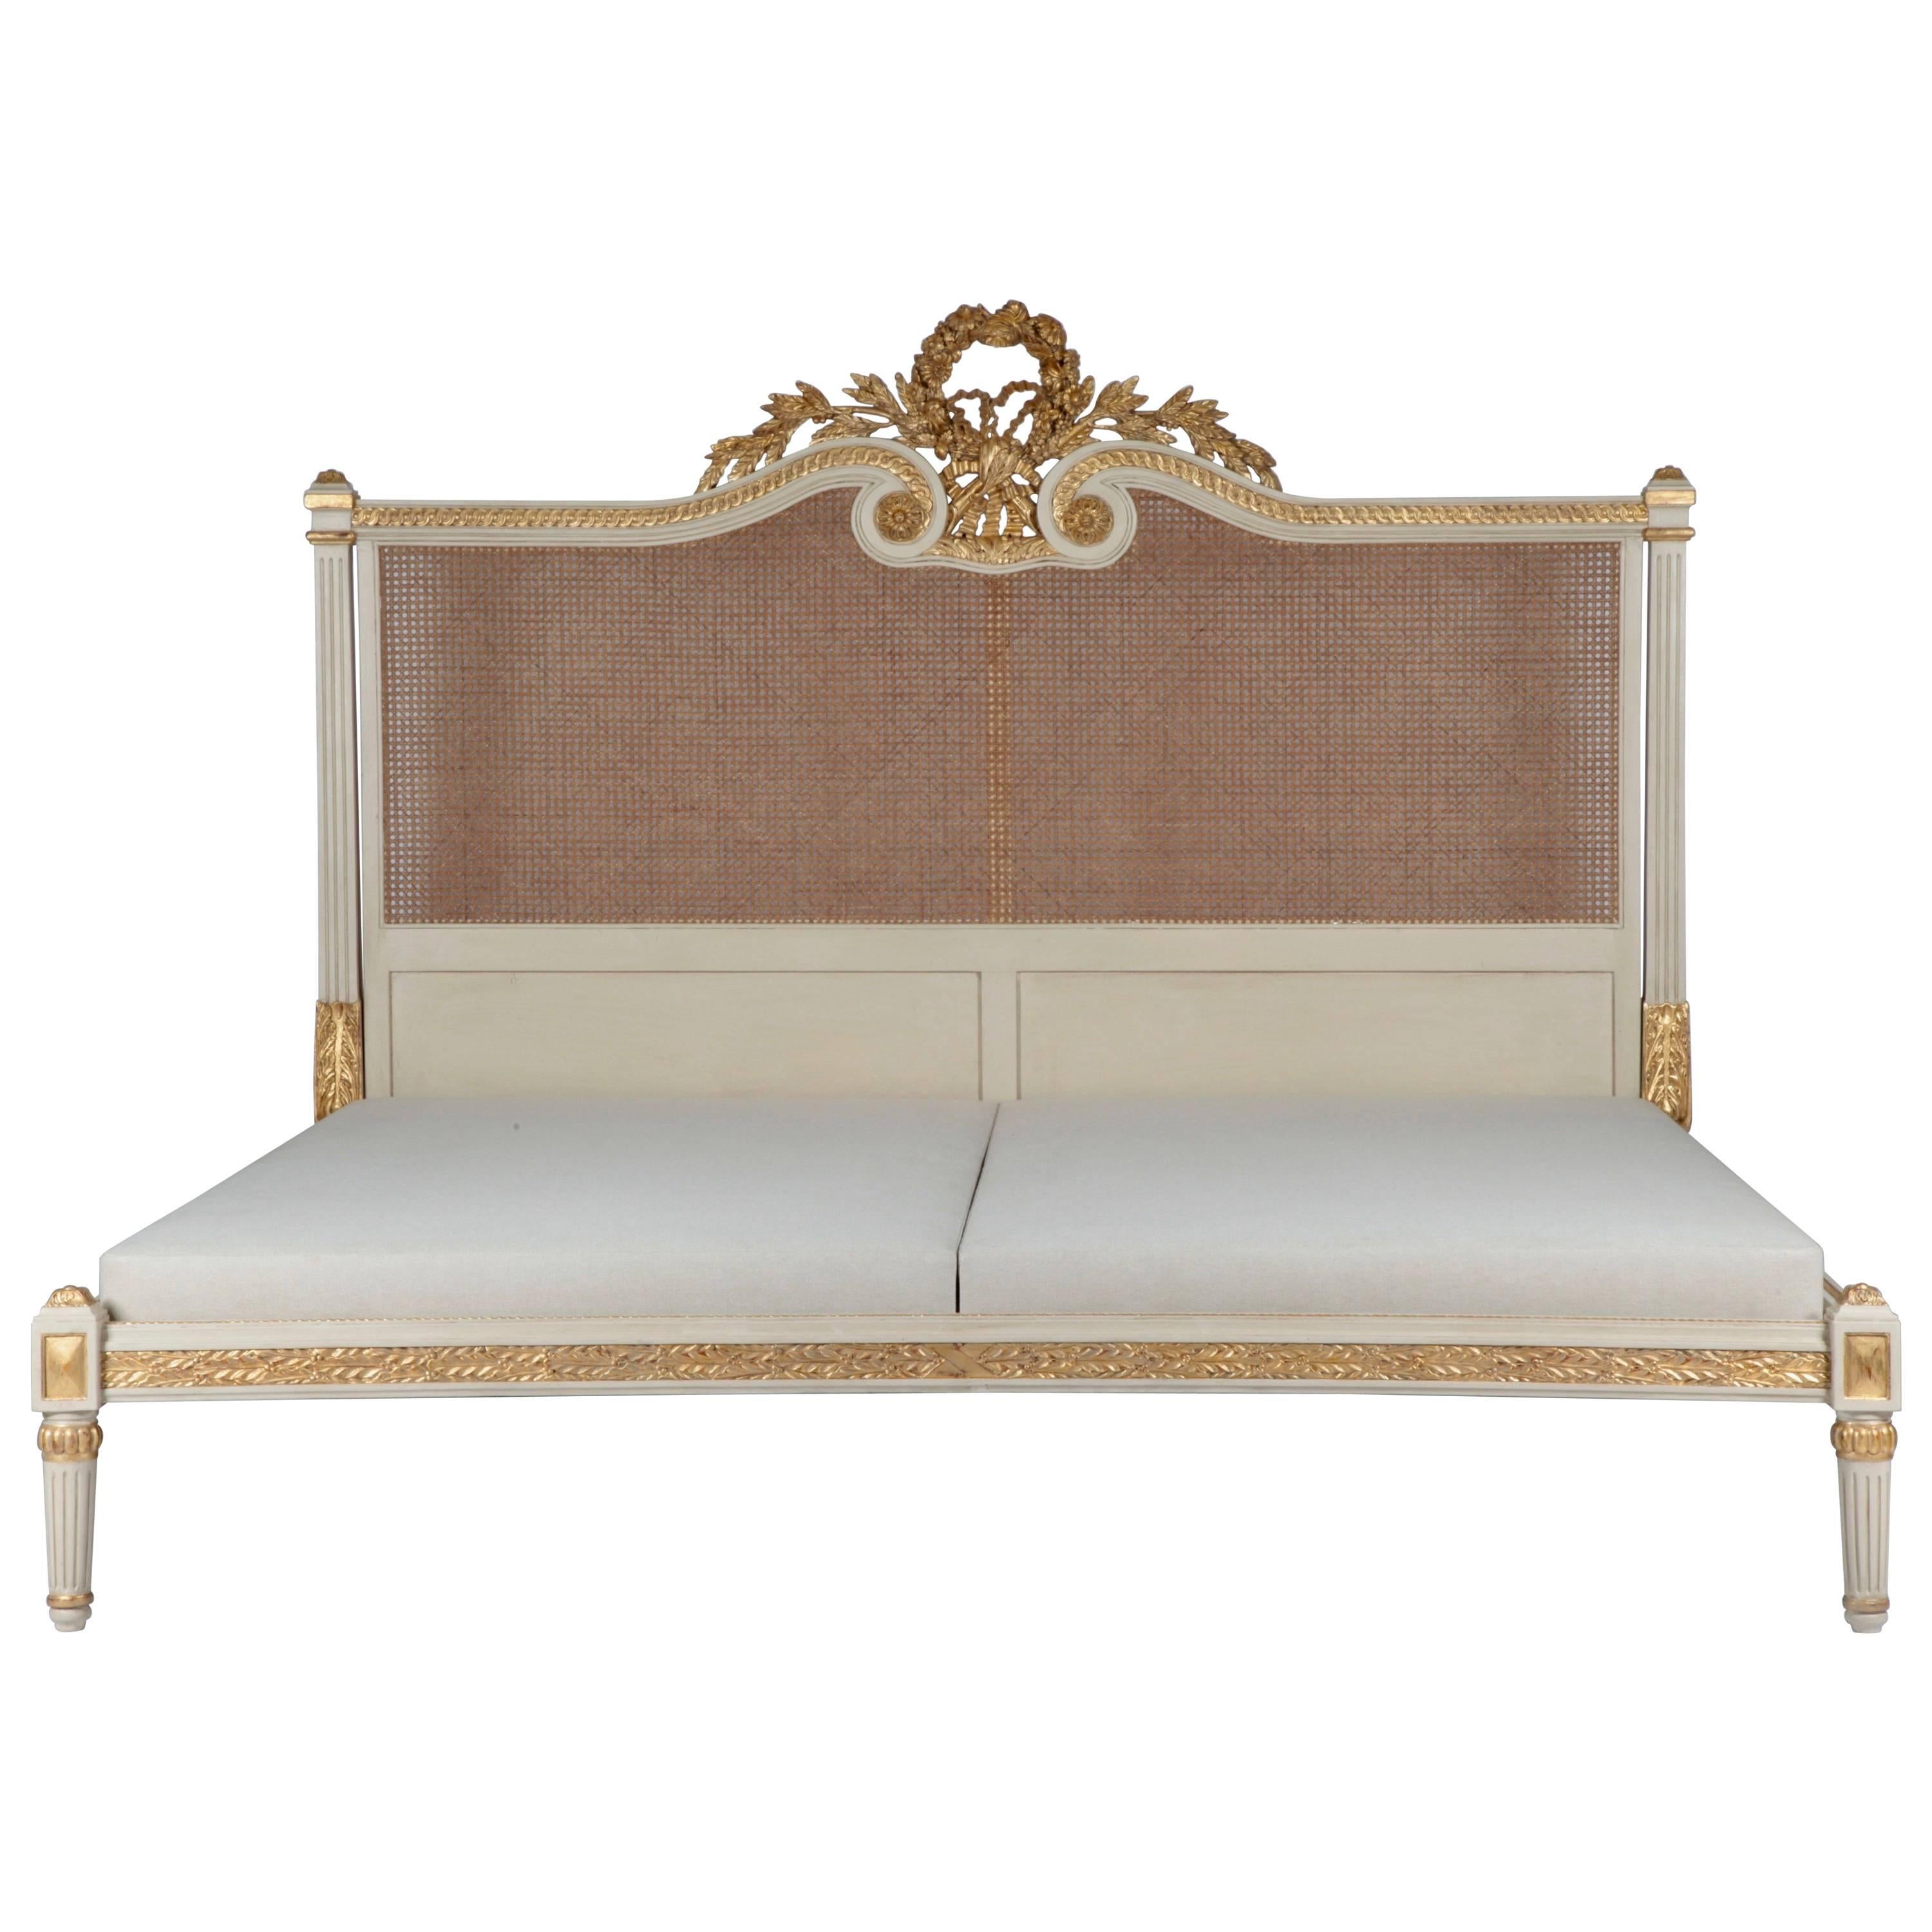 Rosace-Bett, Louis XVI.-Stil, hergestellt von La Maison London, US King-Bett Größe, Mattress-Größe